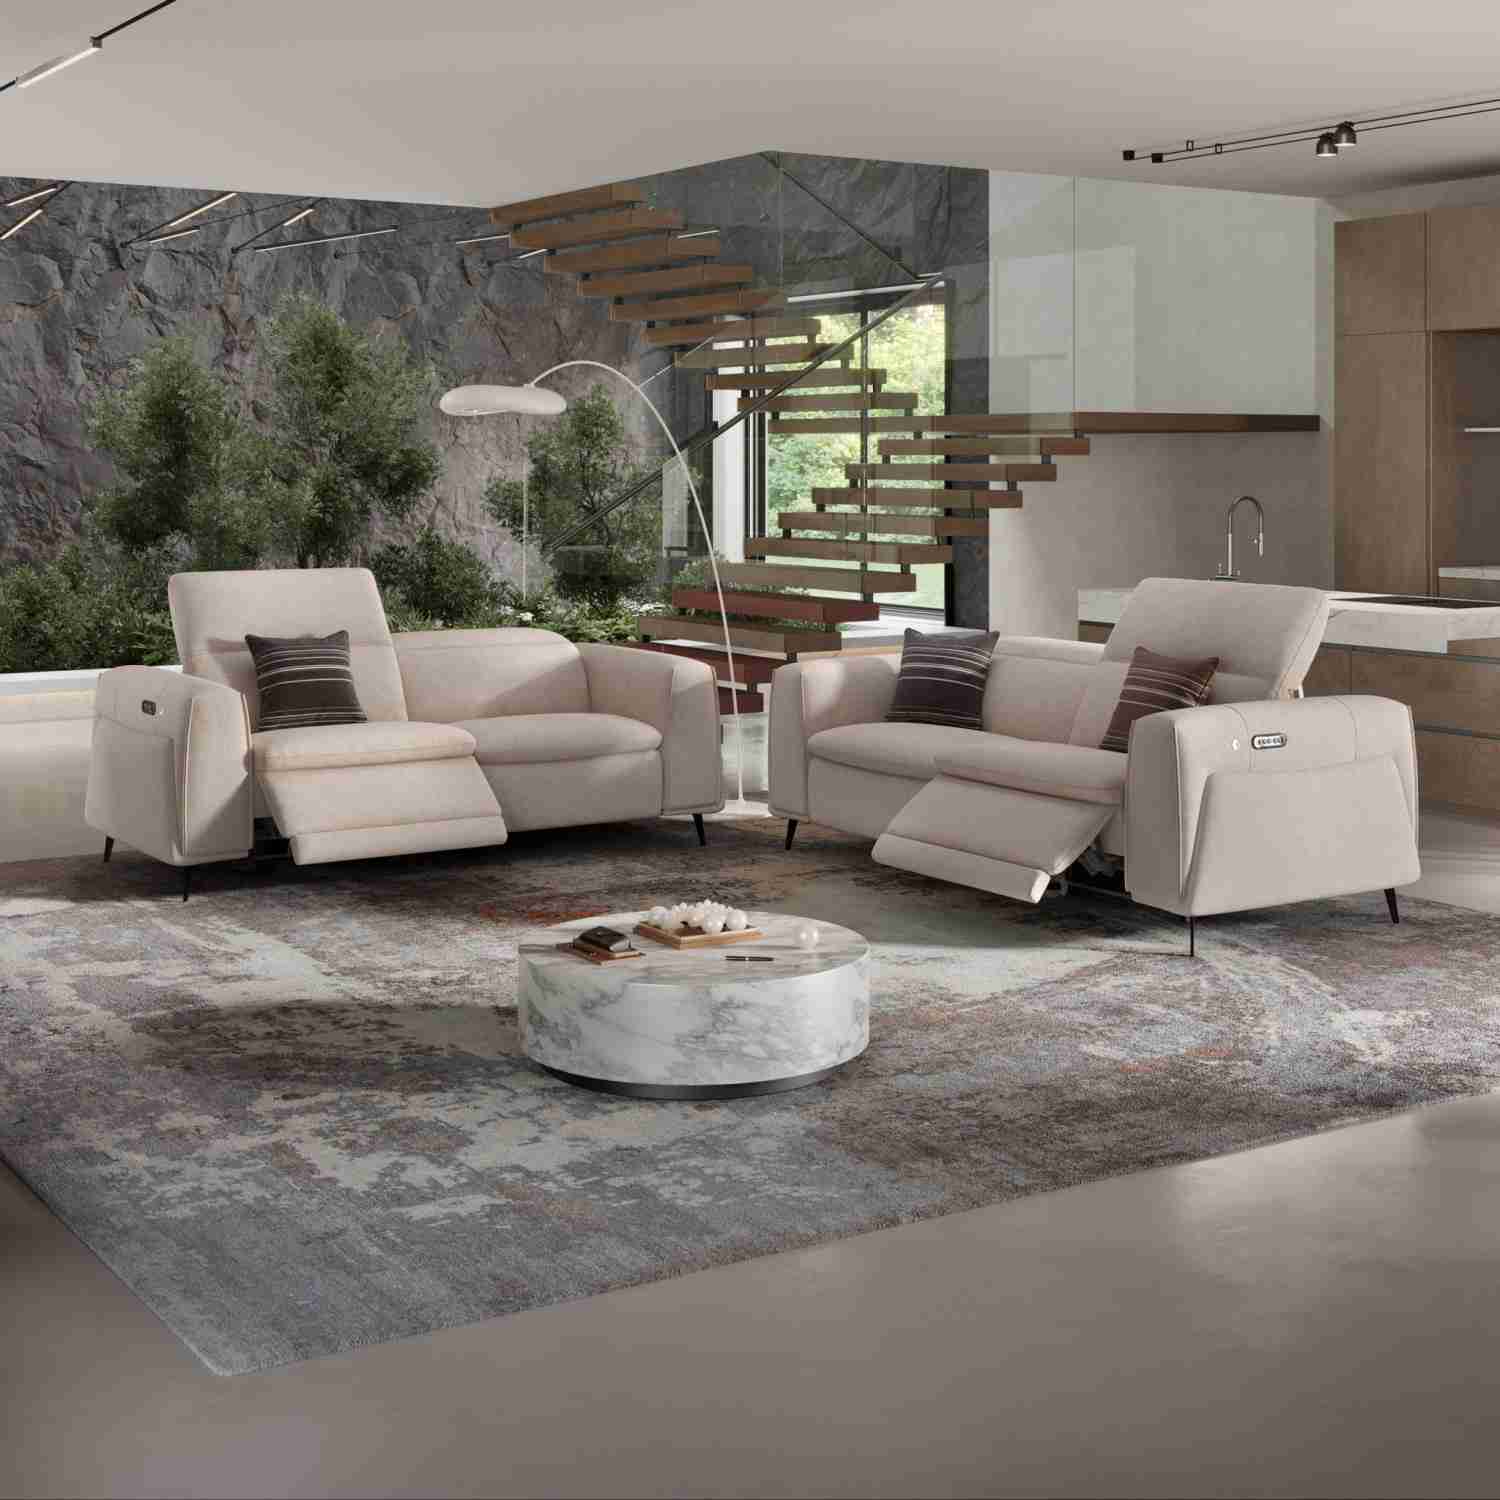 Produktvorstellung Auf allen Ebenen charmant: Couch Belluno kommt mit wärmender Sitzheizung - News, Bild 4